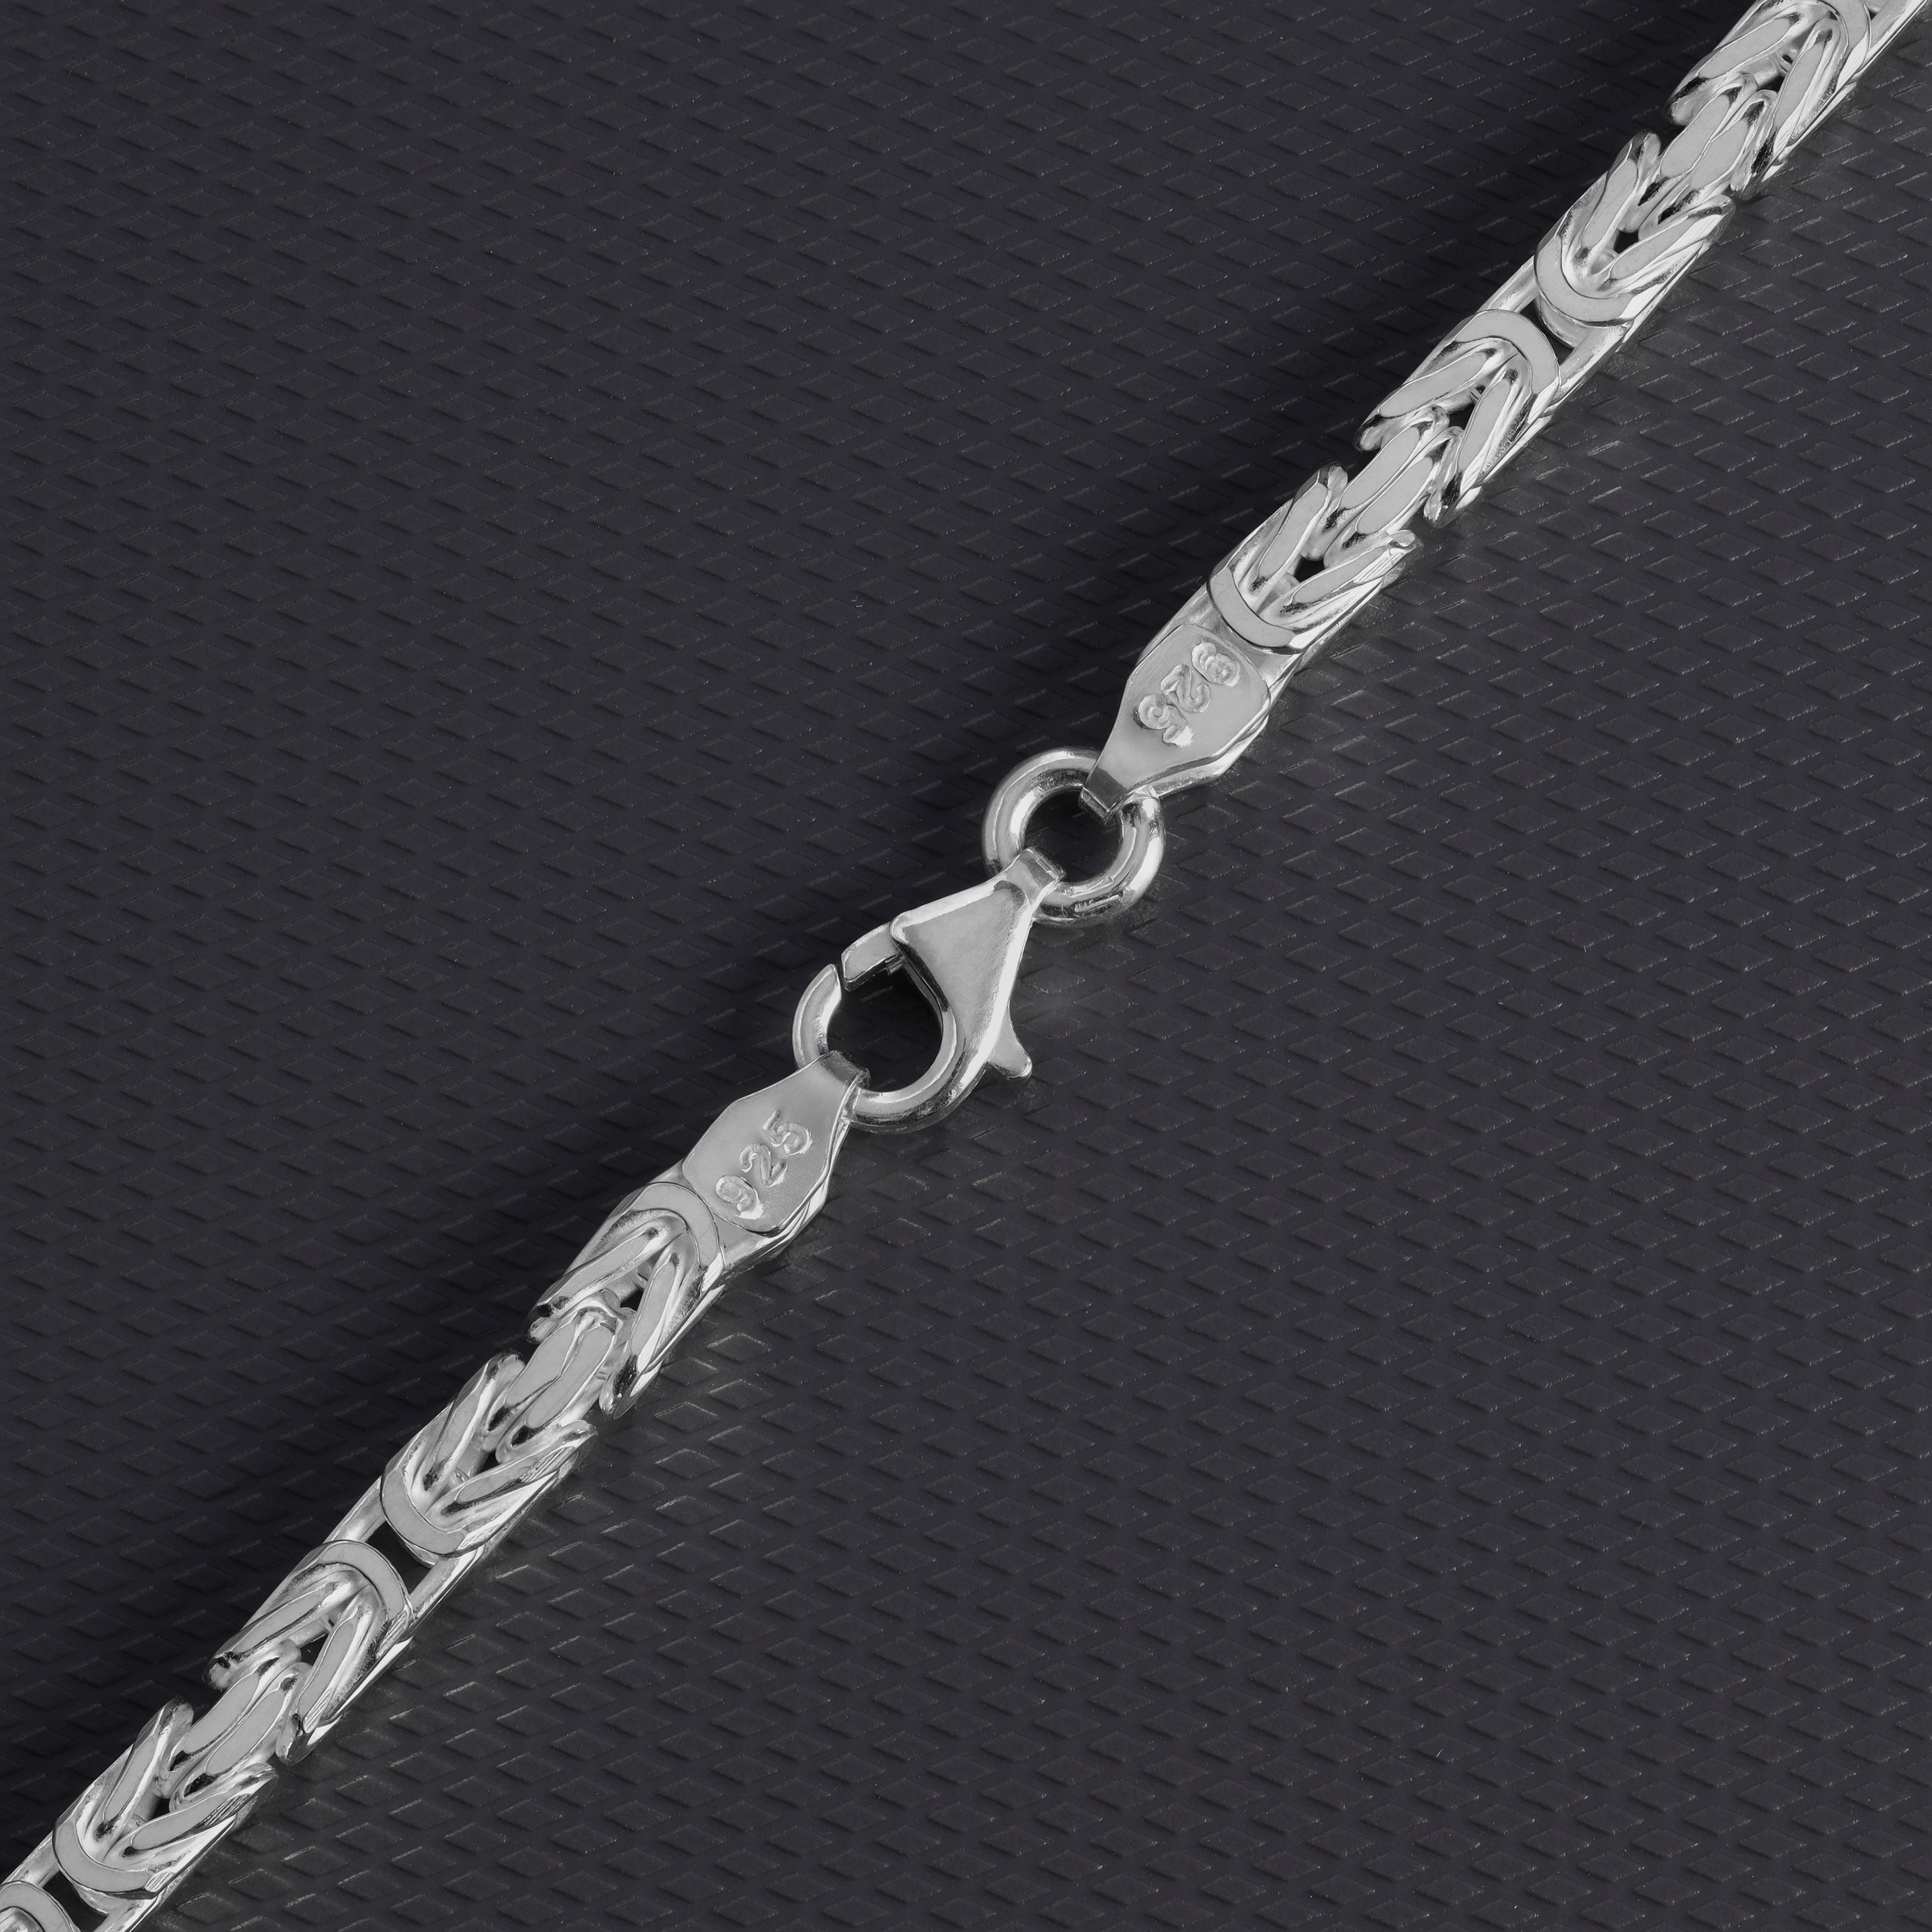 Königskette vierkant 4mm breit 50cm lang 925 Sterling Silber (K946) - Taipan Schmuck